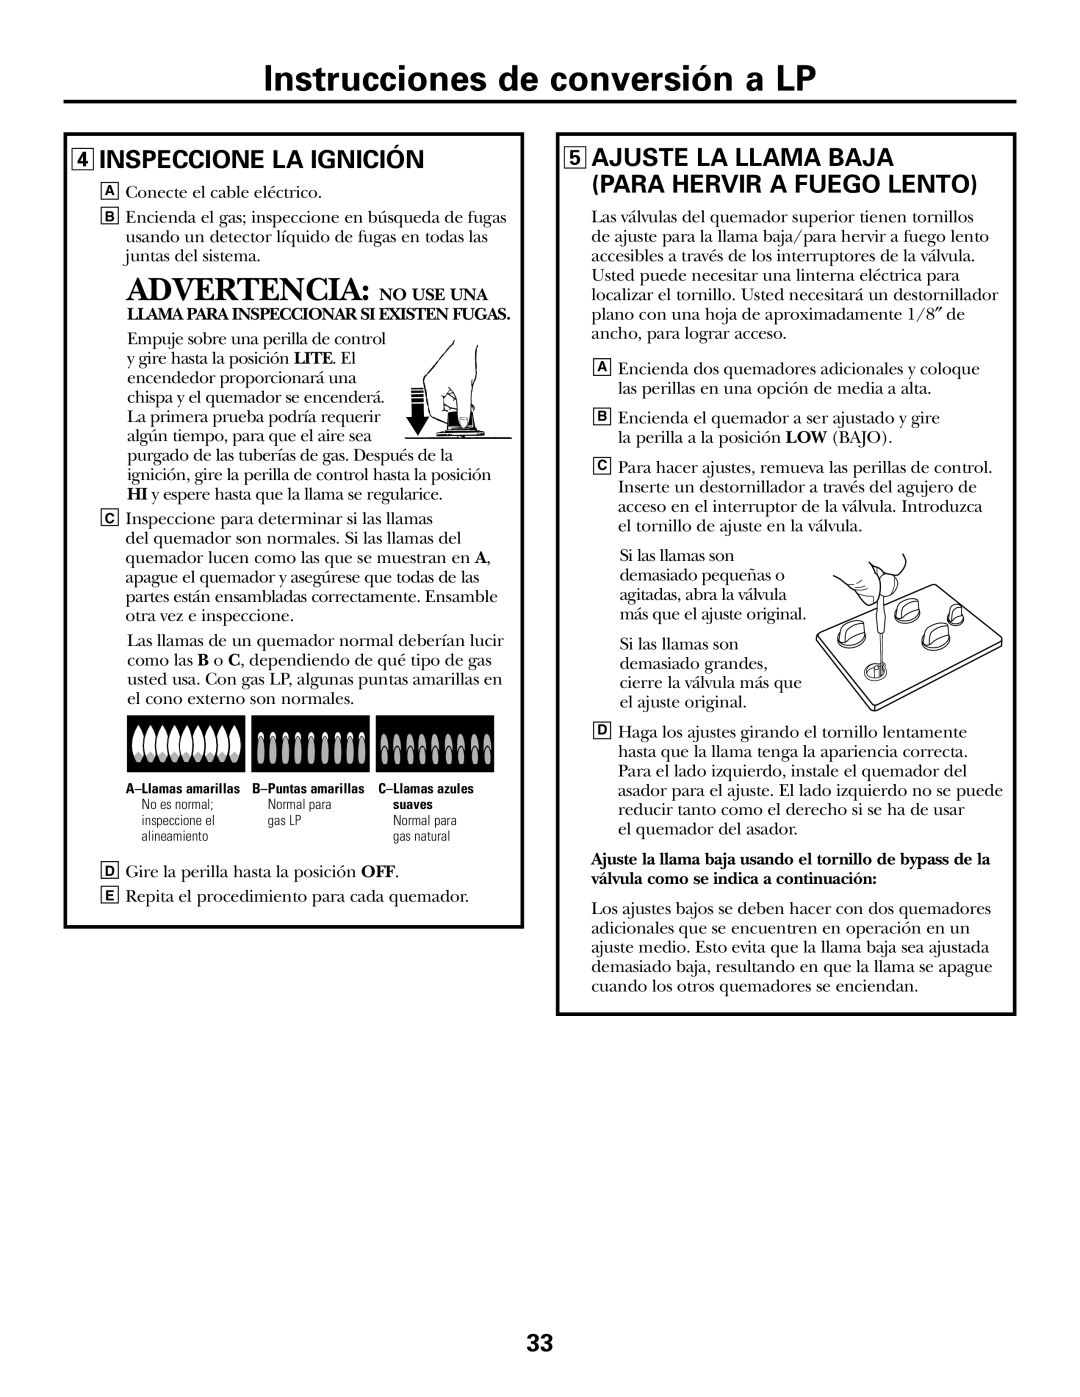 GE JGP990 manual Advertencia: No Use Una, Instrucciones de conversión a LP, 4INSPECCIONE LA IGNICIÓN 